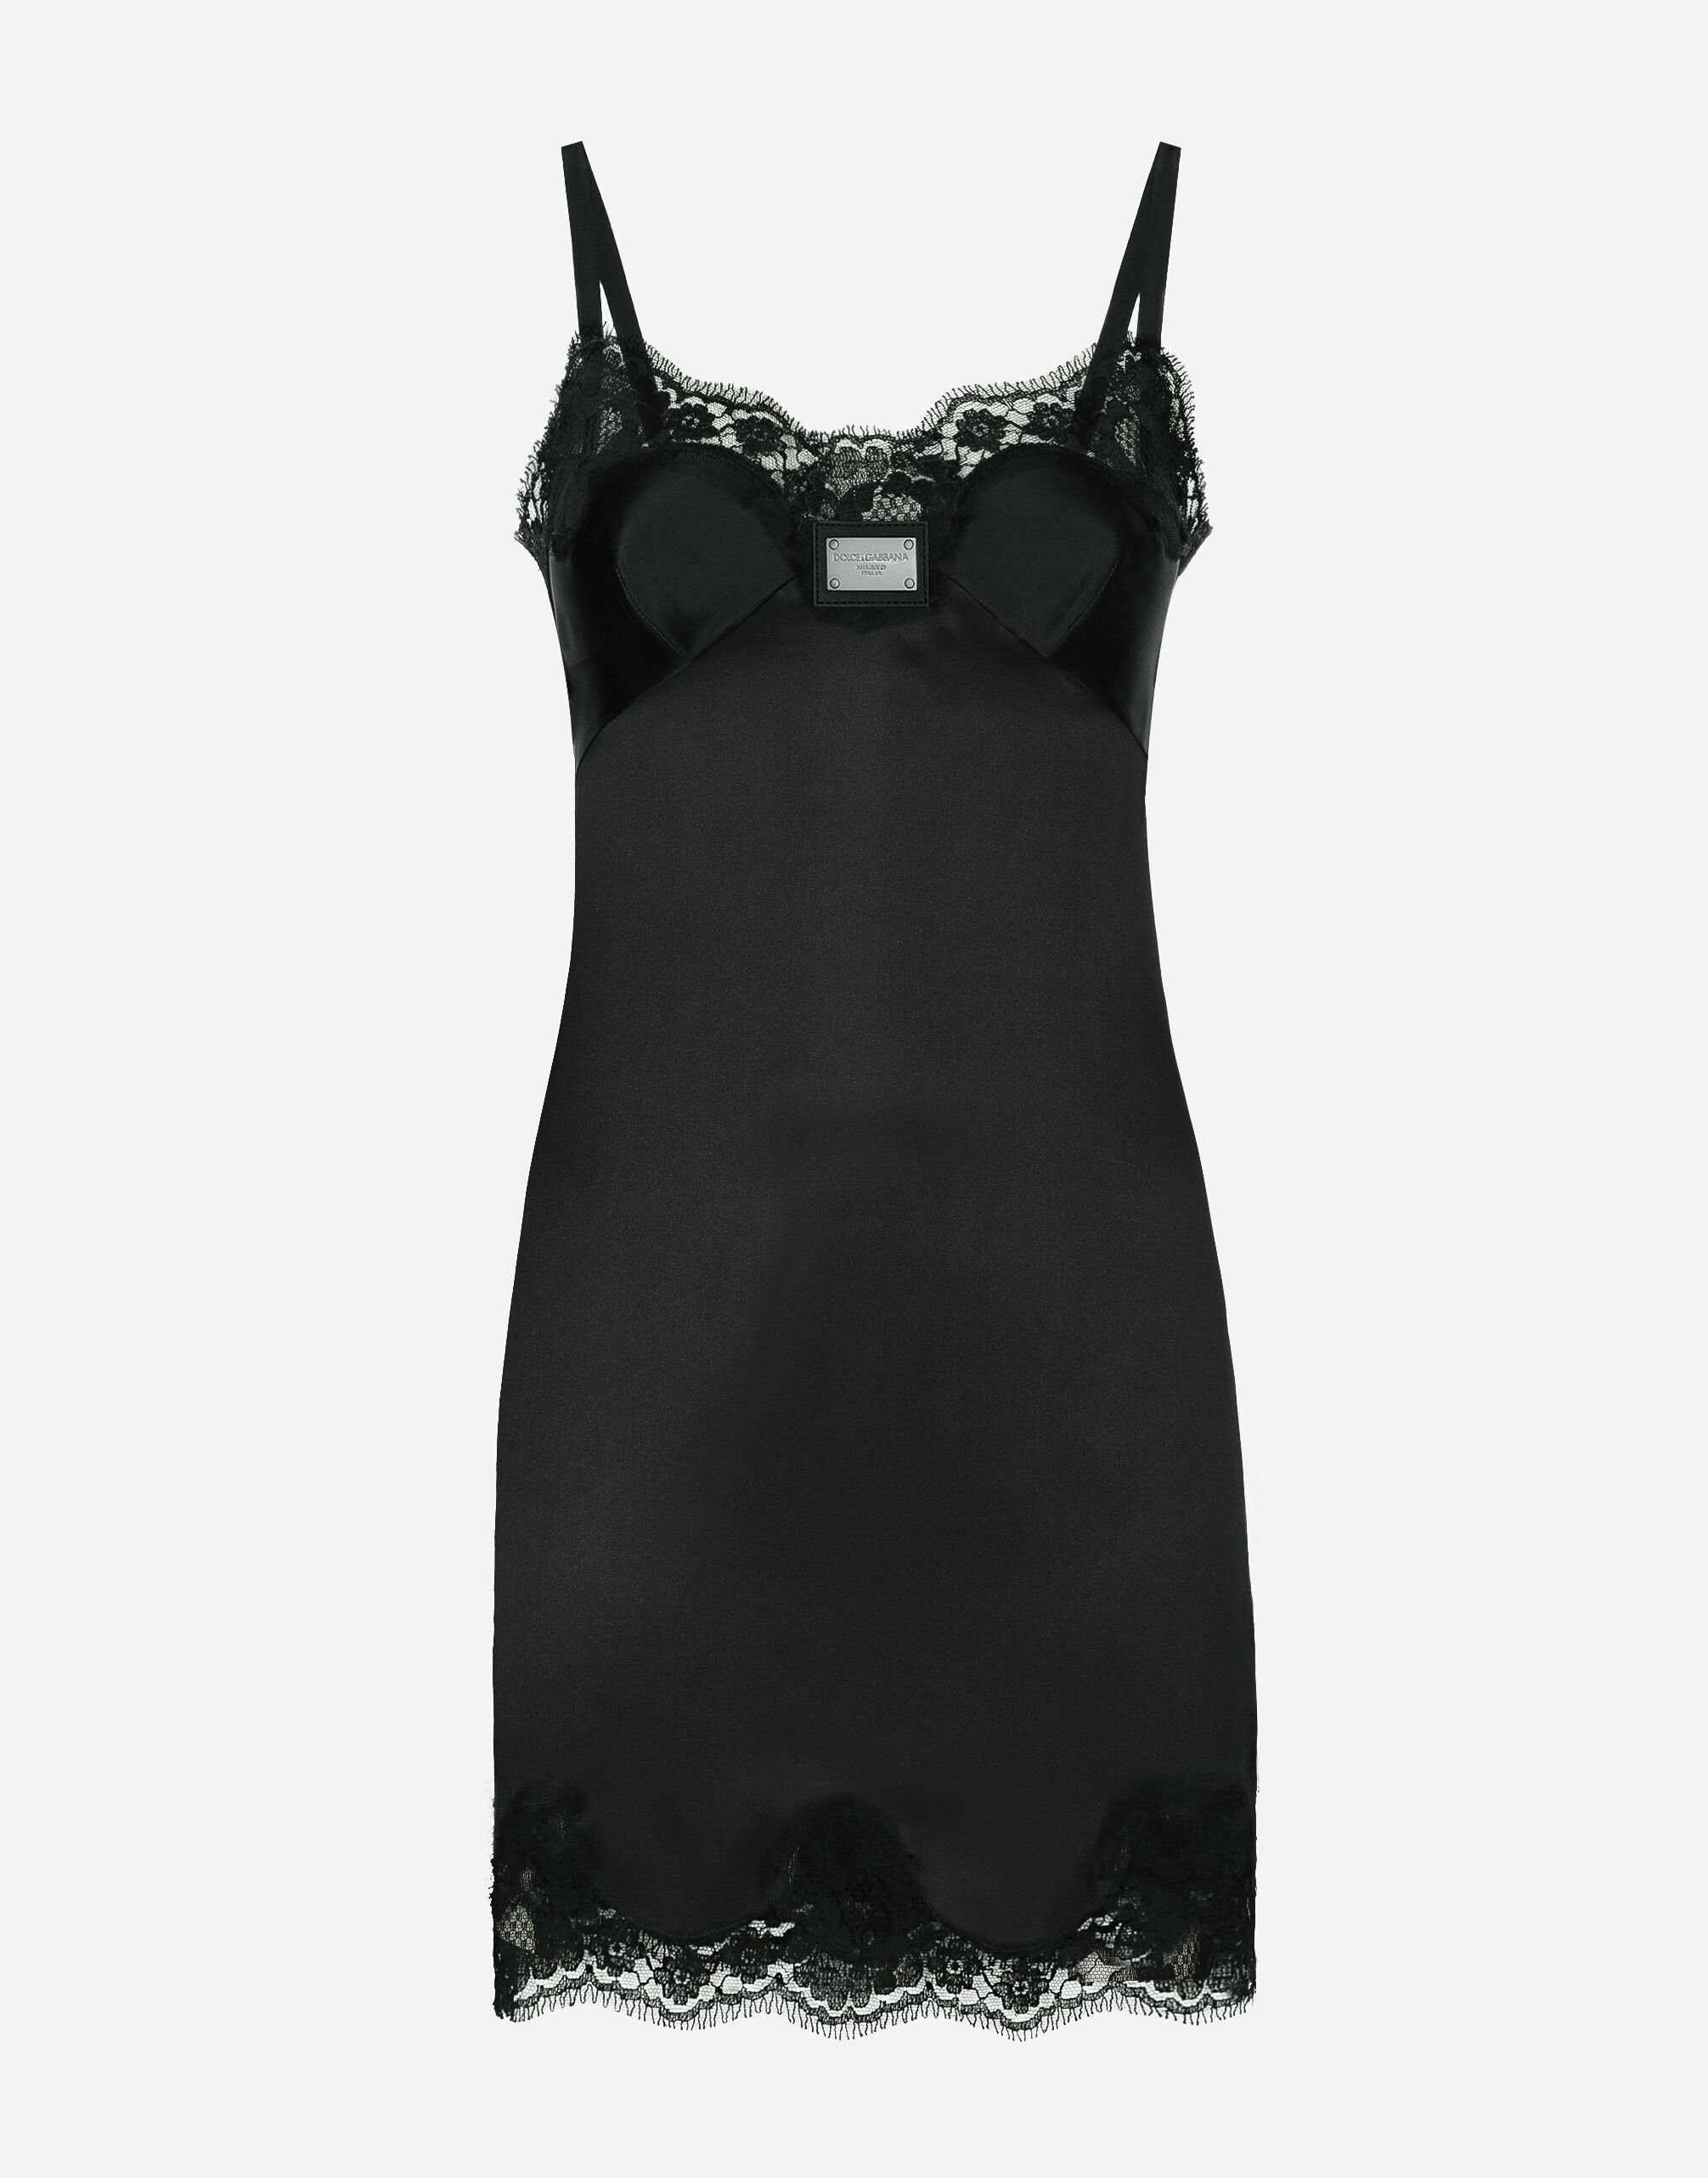 Dolce & Gabbana Vestido corto tipo combinación con placa Dolce&Gabbana Negro VG6186VN187